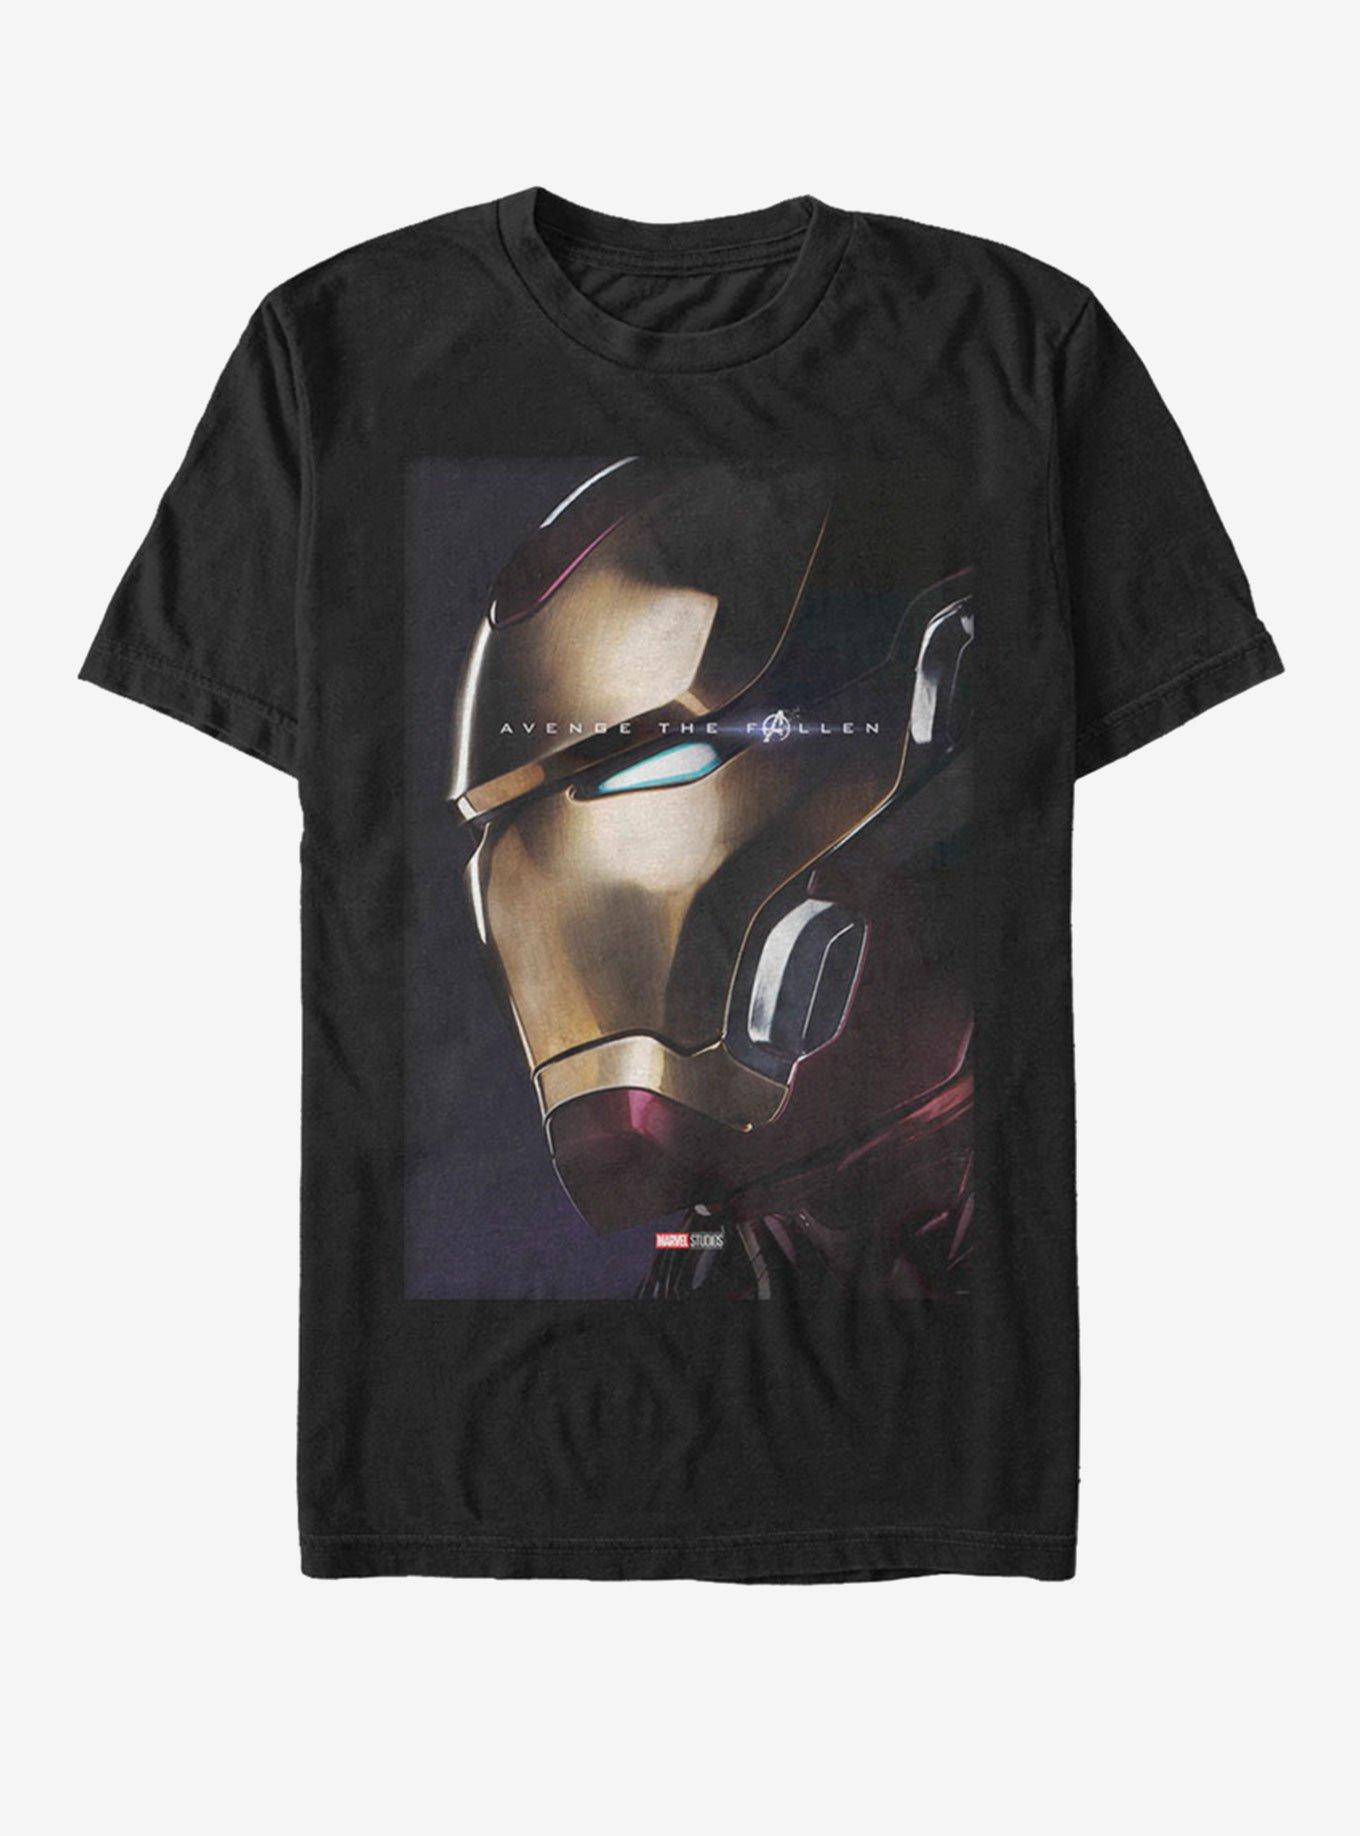 Marvel Avengers: Endgame Iron Man Profile T-Shirt, BLACK, hi-res